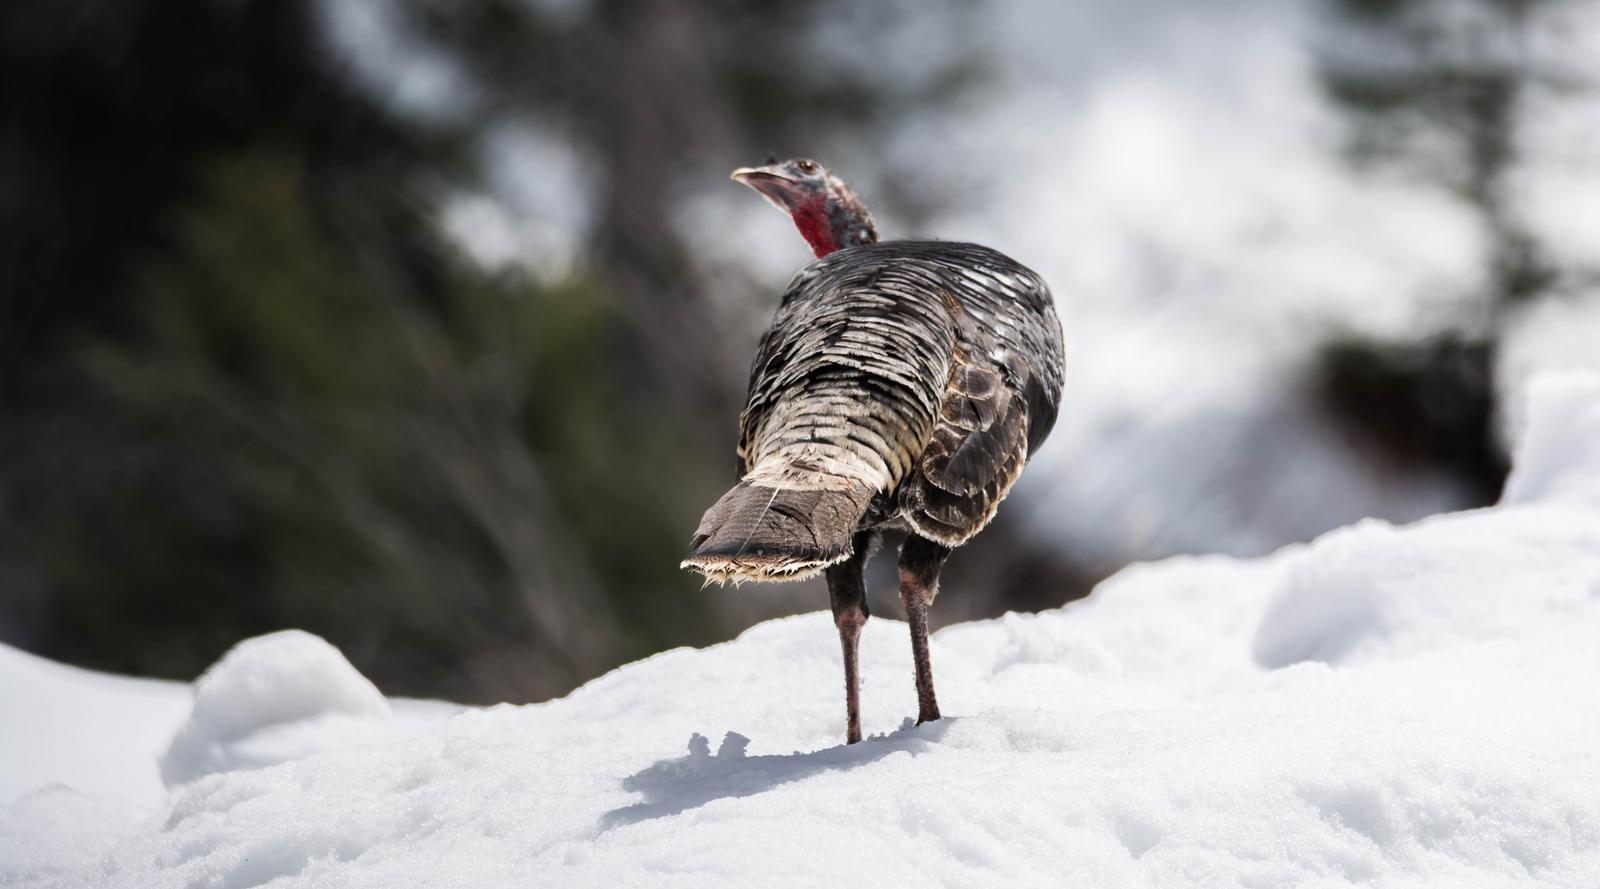 Wild Turkey Photo by Karen Prisby